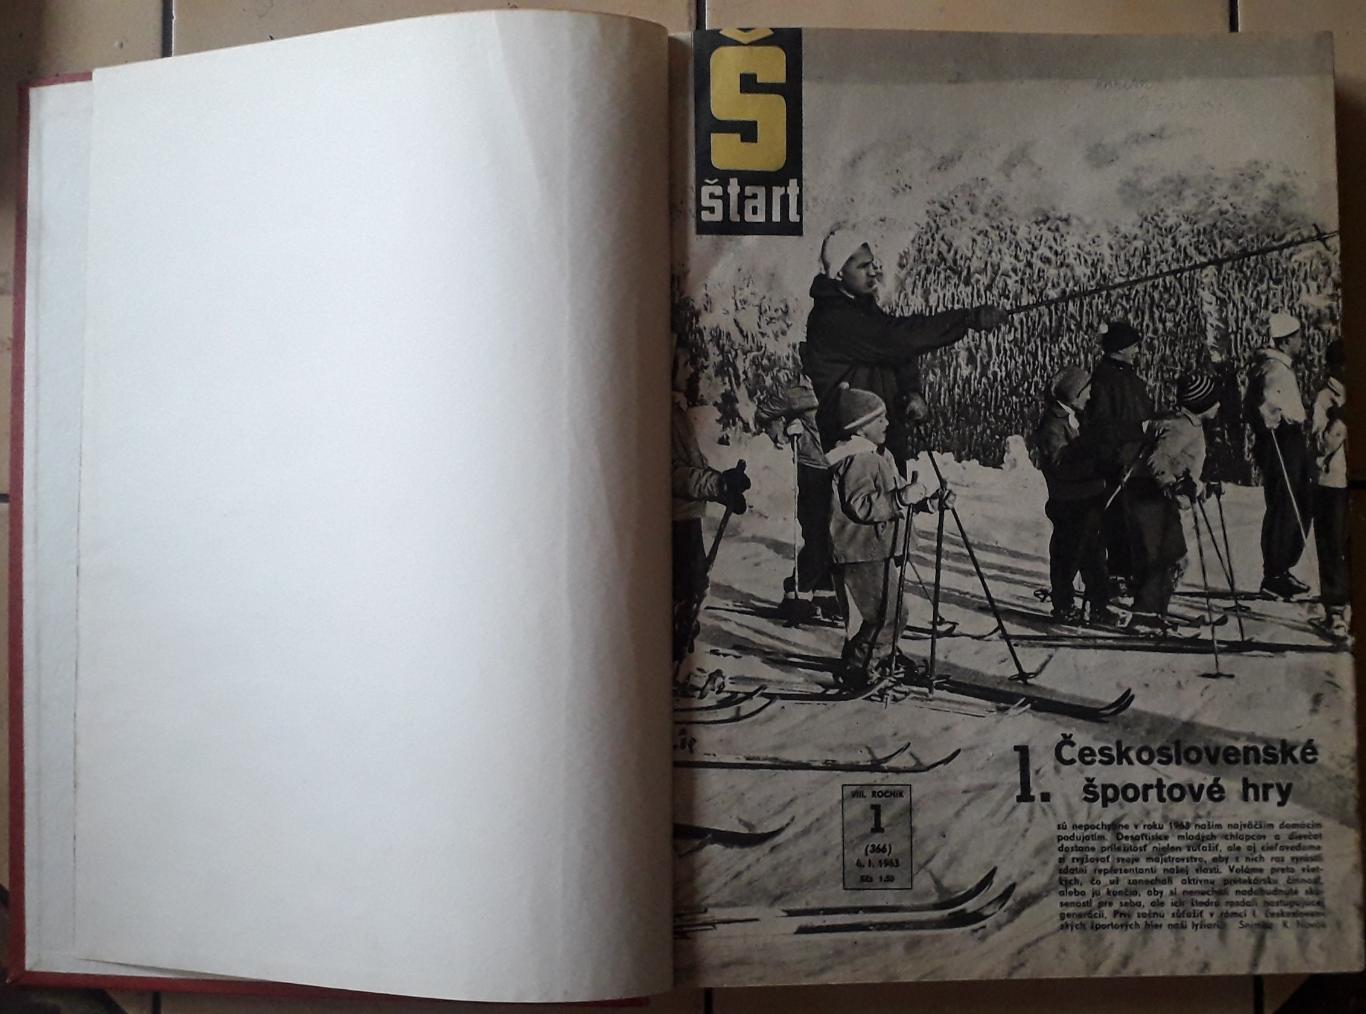 Журнал Старт, весь 1963 год в одной книге.